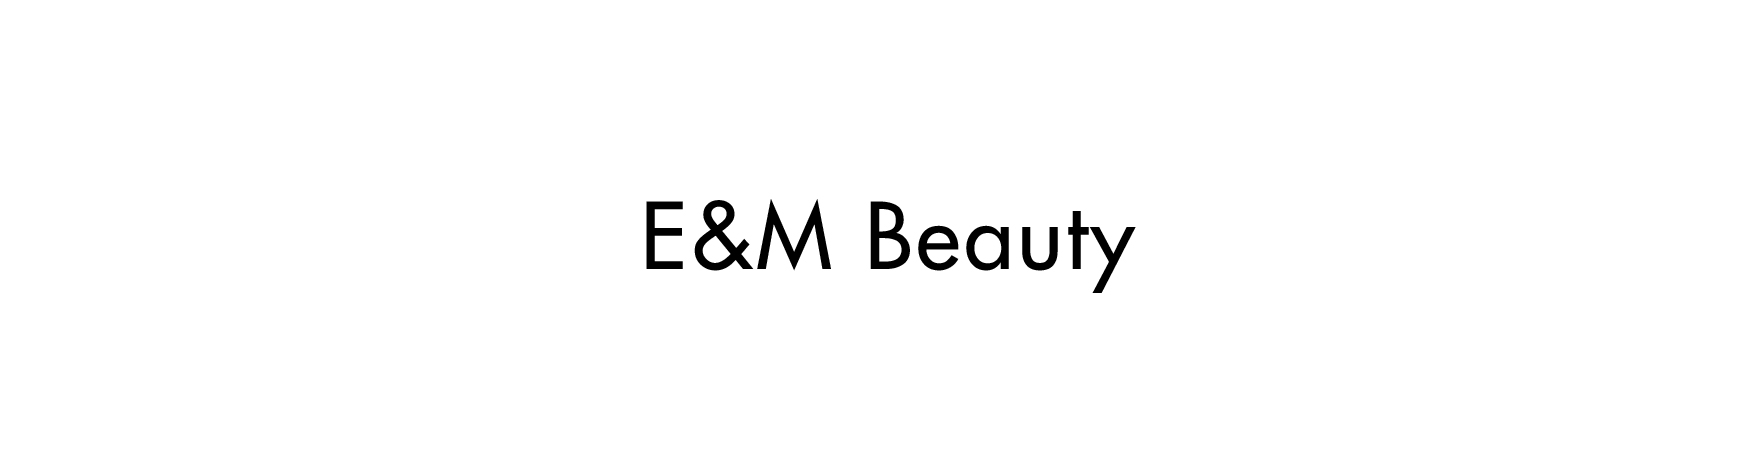 E&M Beauty